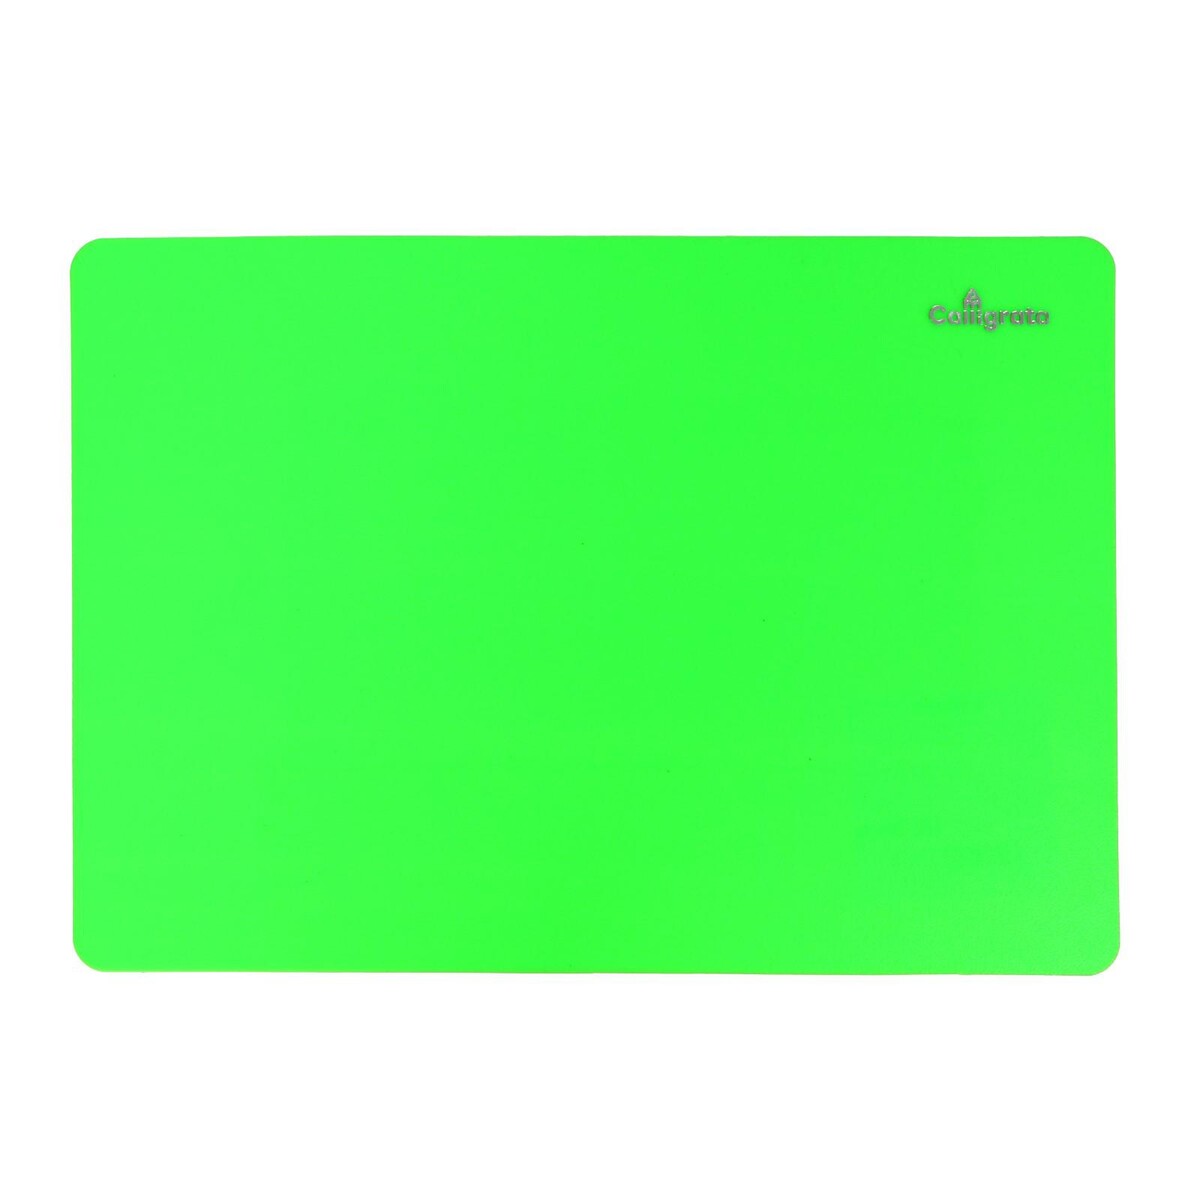 Доска для лепки пластиковая а4 calligrata доска профессиональная разделочная 40×30 см толщина 1 2 см зеленый